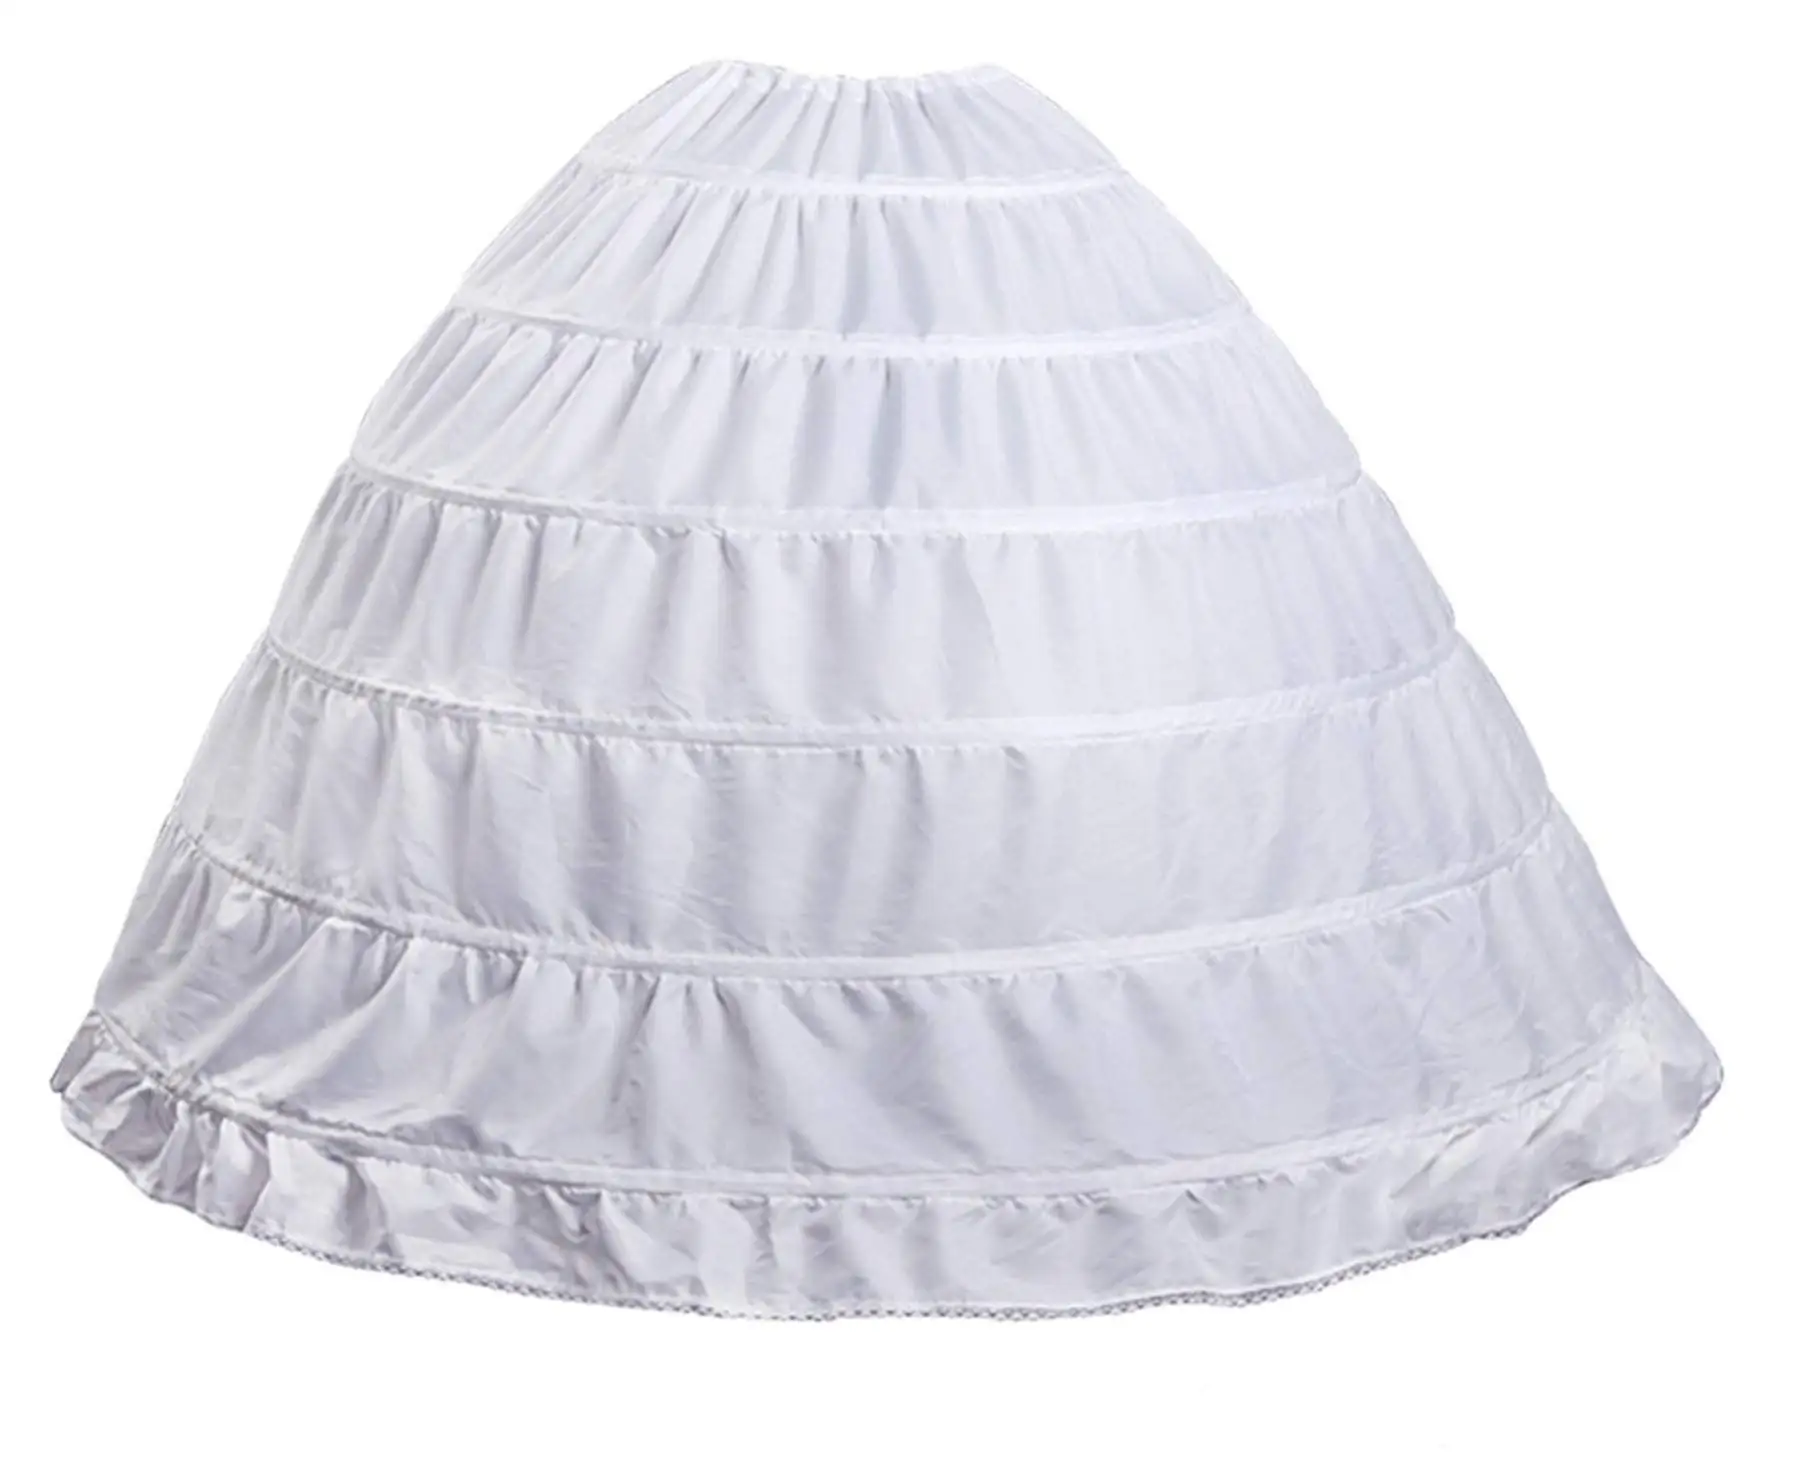 

perfect Hoop Skirt Petticoat Skirt for Women Ball Gown Slip Crinoline Underskirt 5 Ruffles 4 Hoop